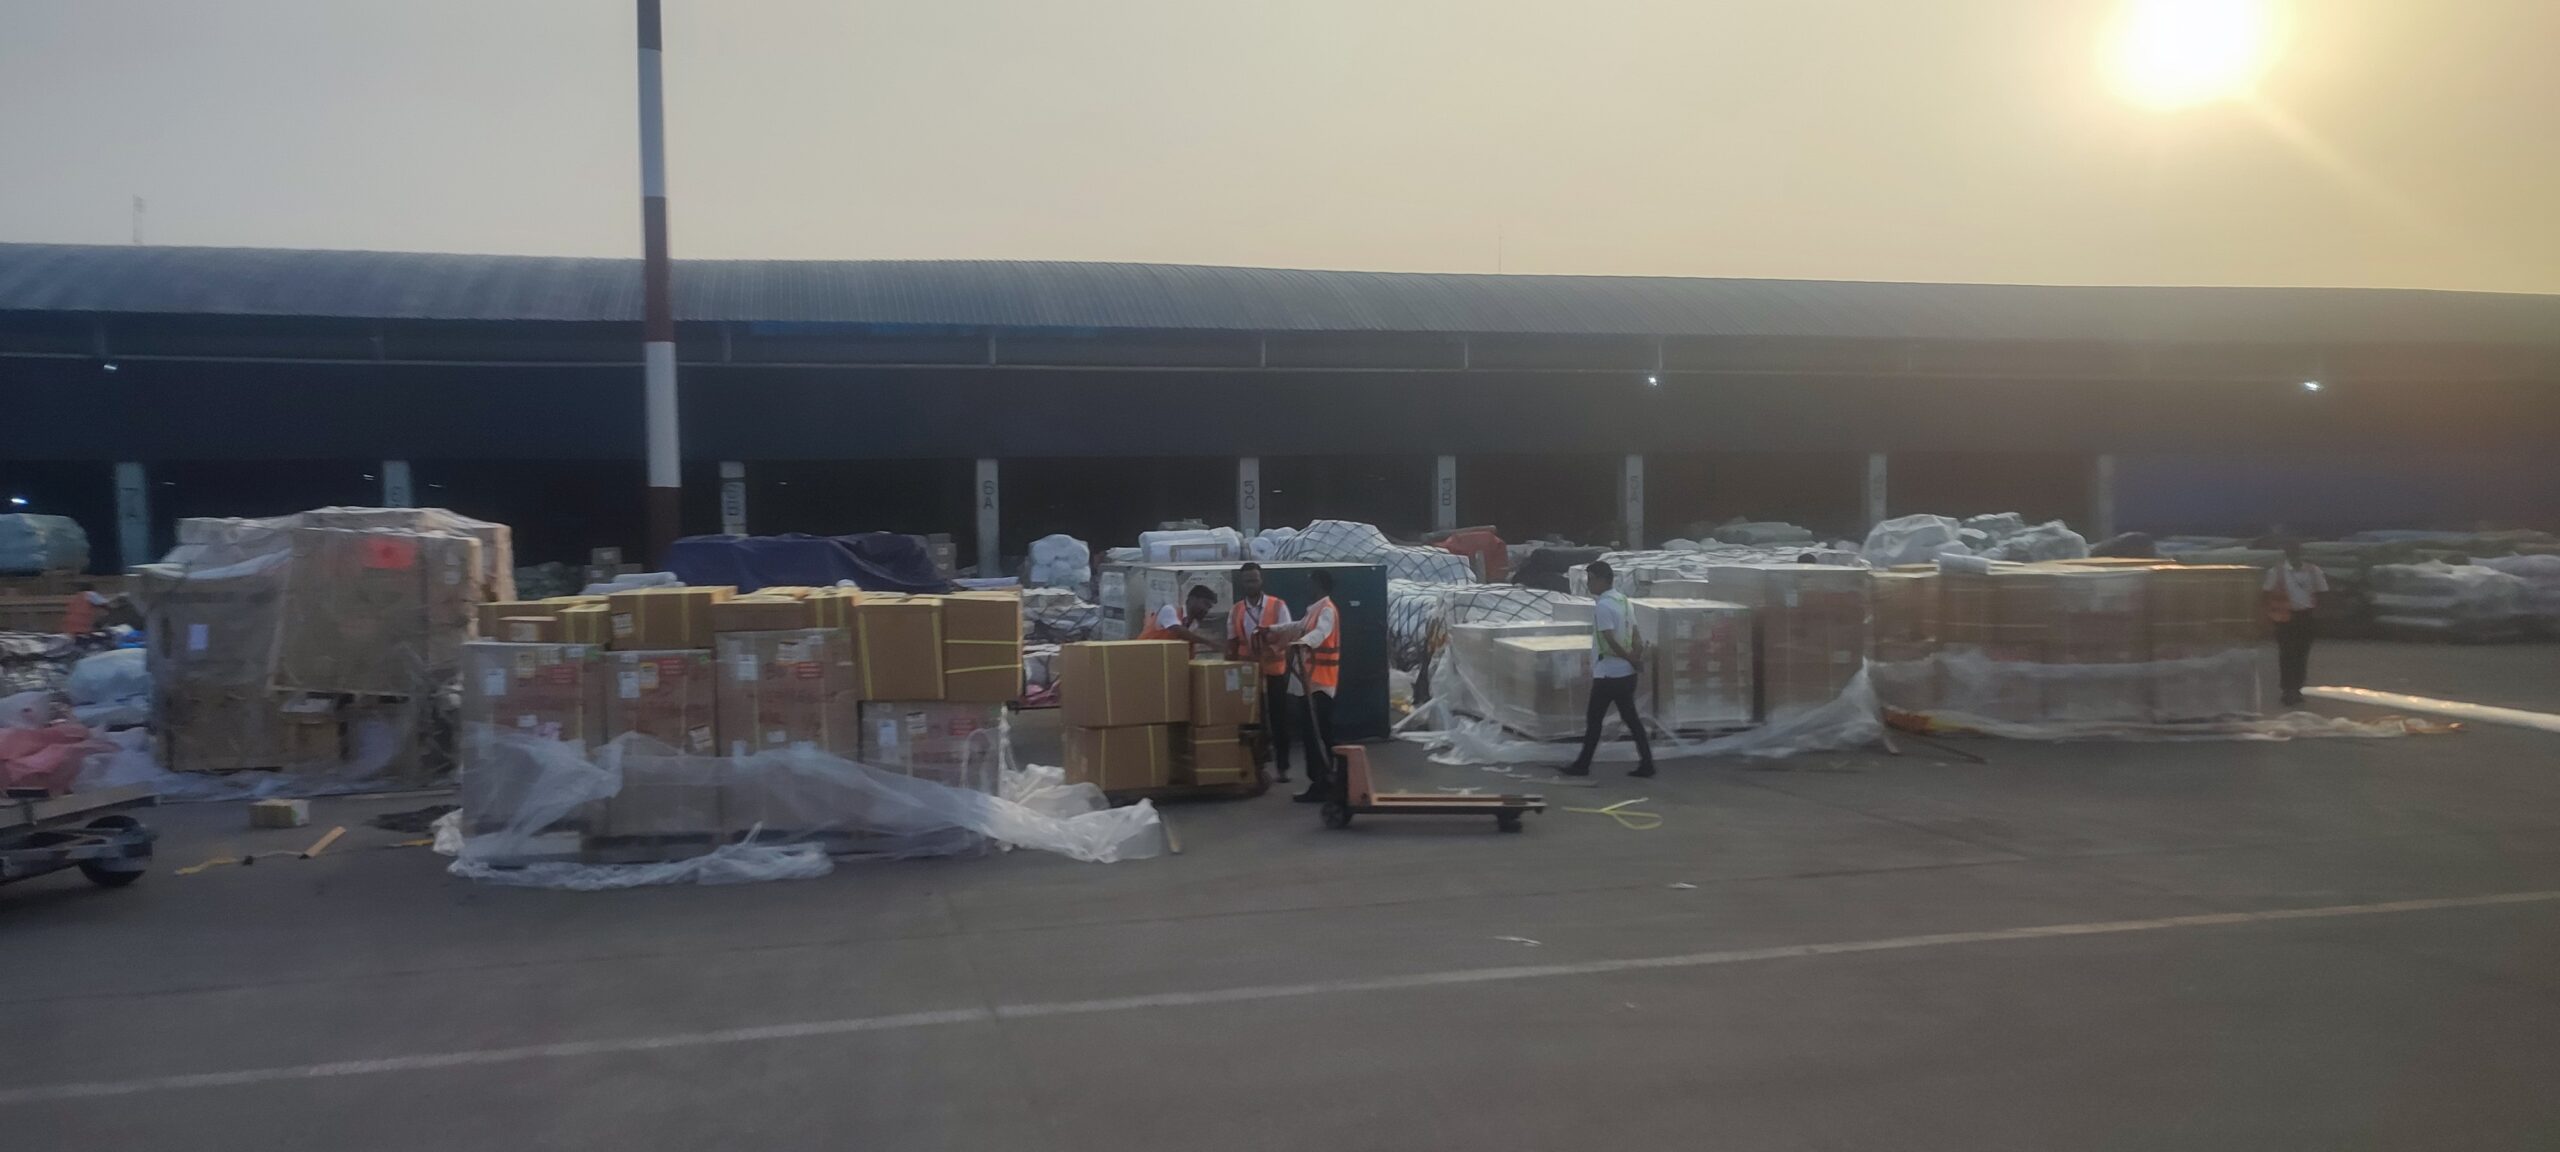 【バングラ珍百景】空港倉庫からあふれ出て、雨風にさらされた荷物たち